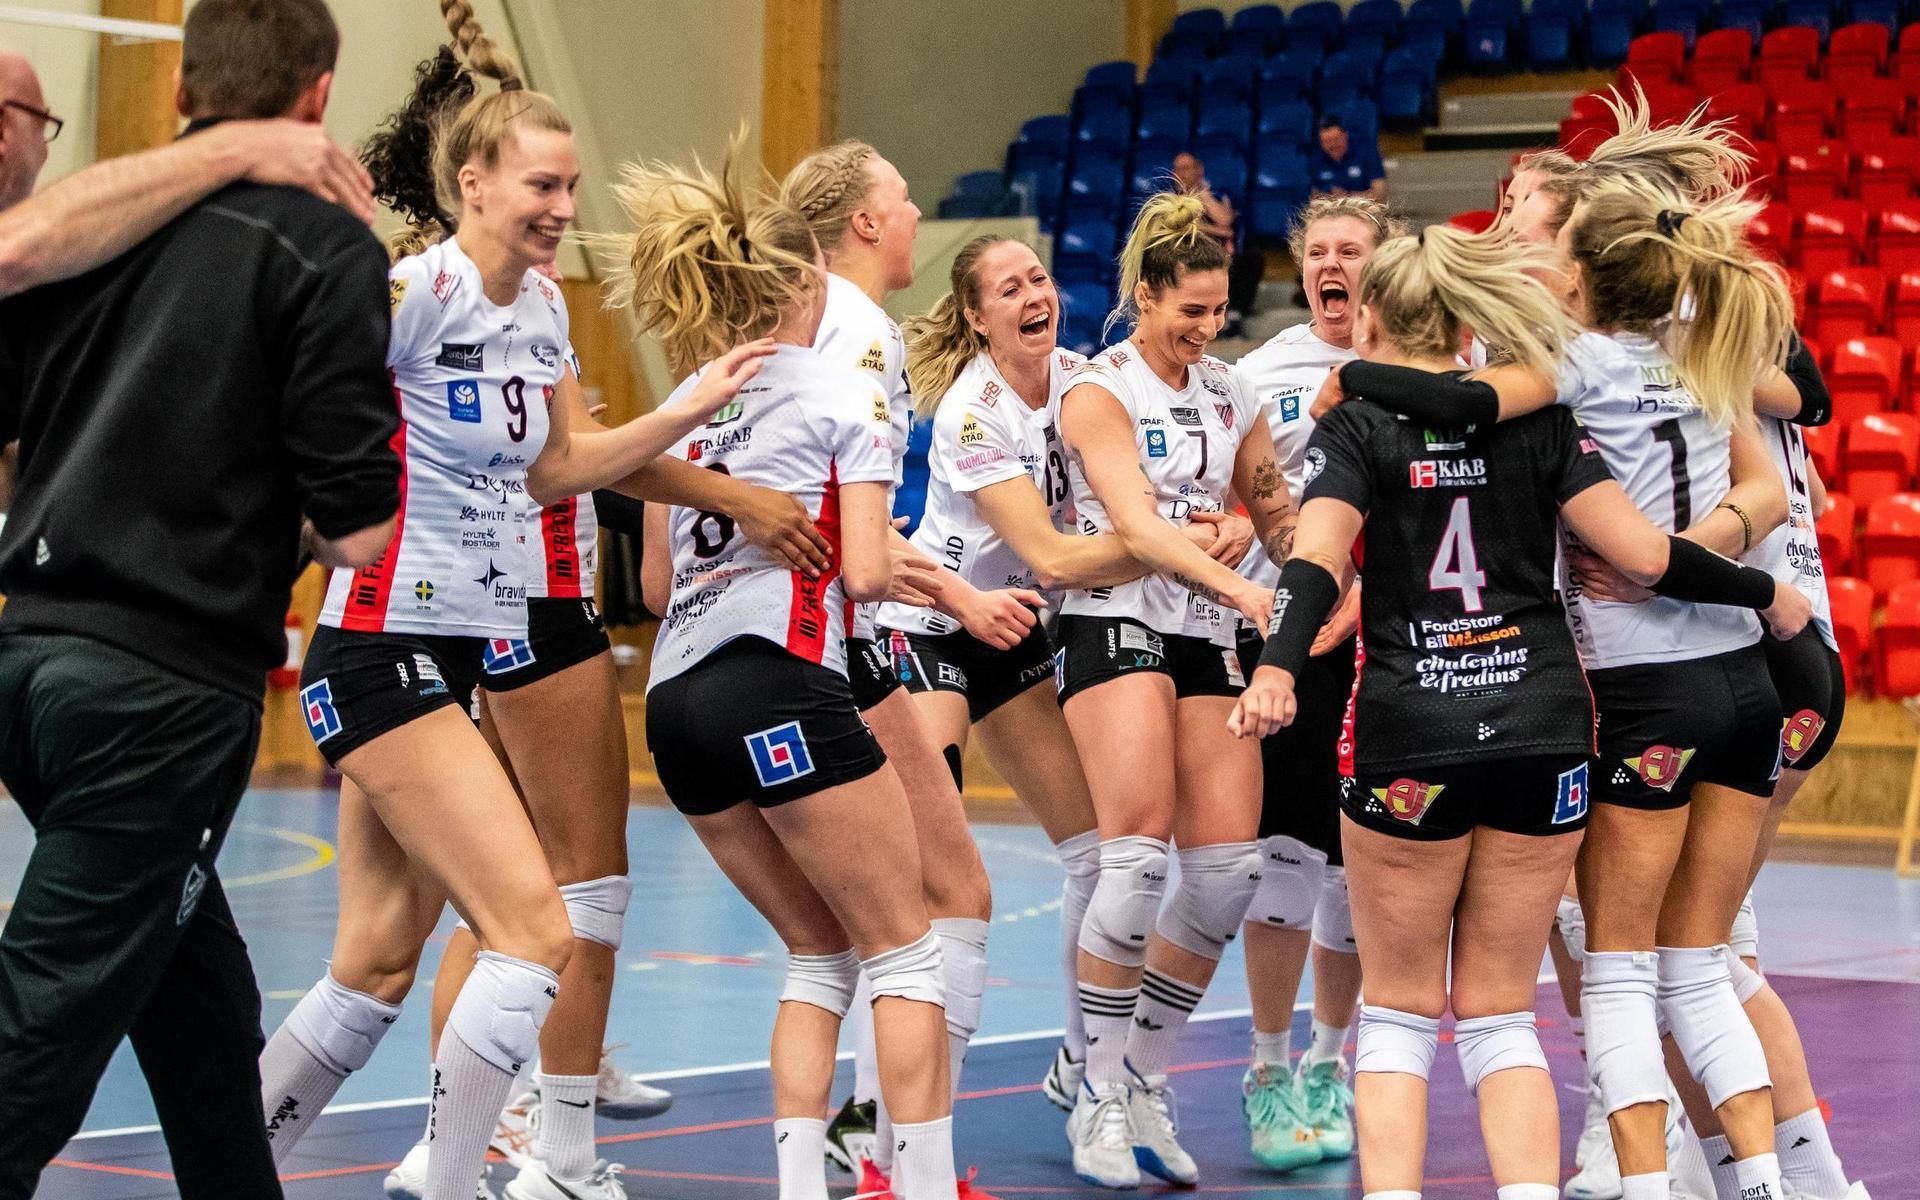 Hylte/Halmstads spelare firar segern i den första SM-finalen. Bild: Mathilda Ahlberg/Bildbyrån